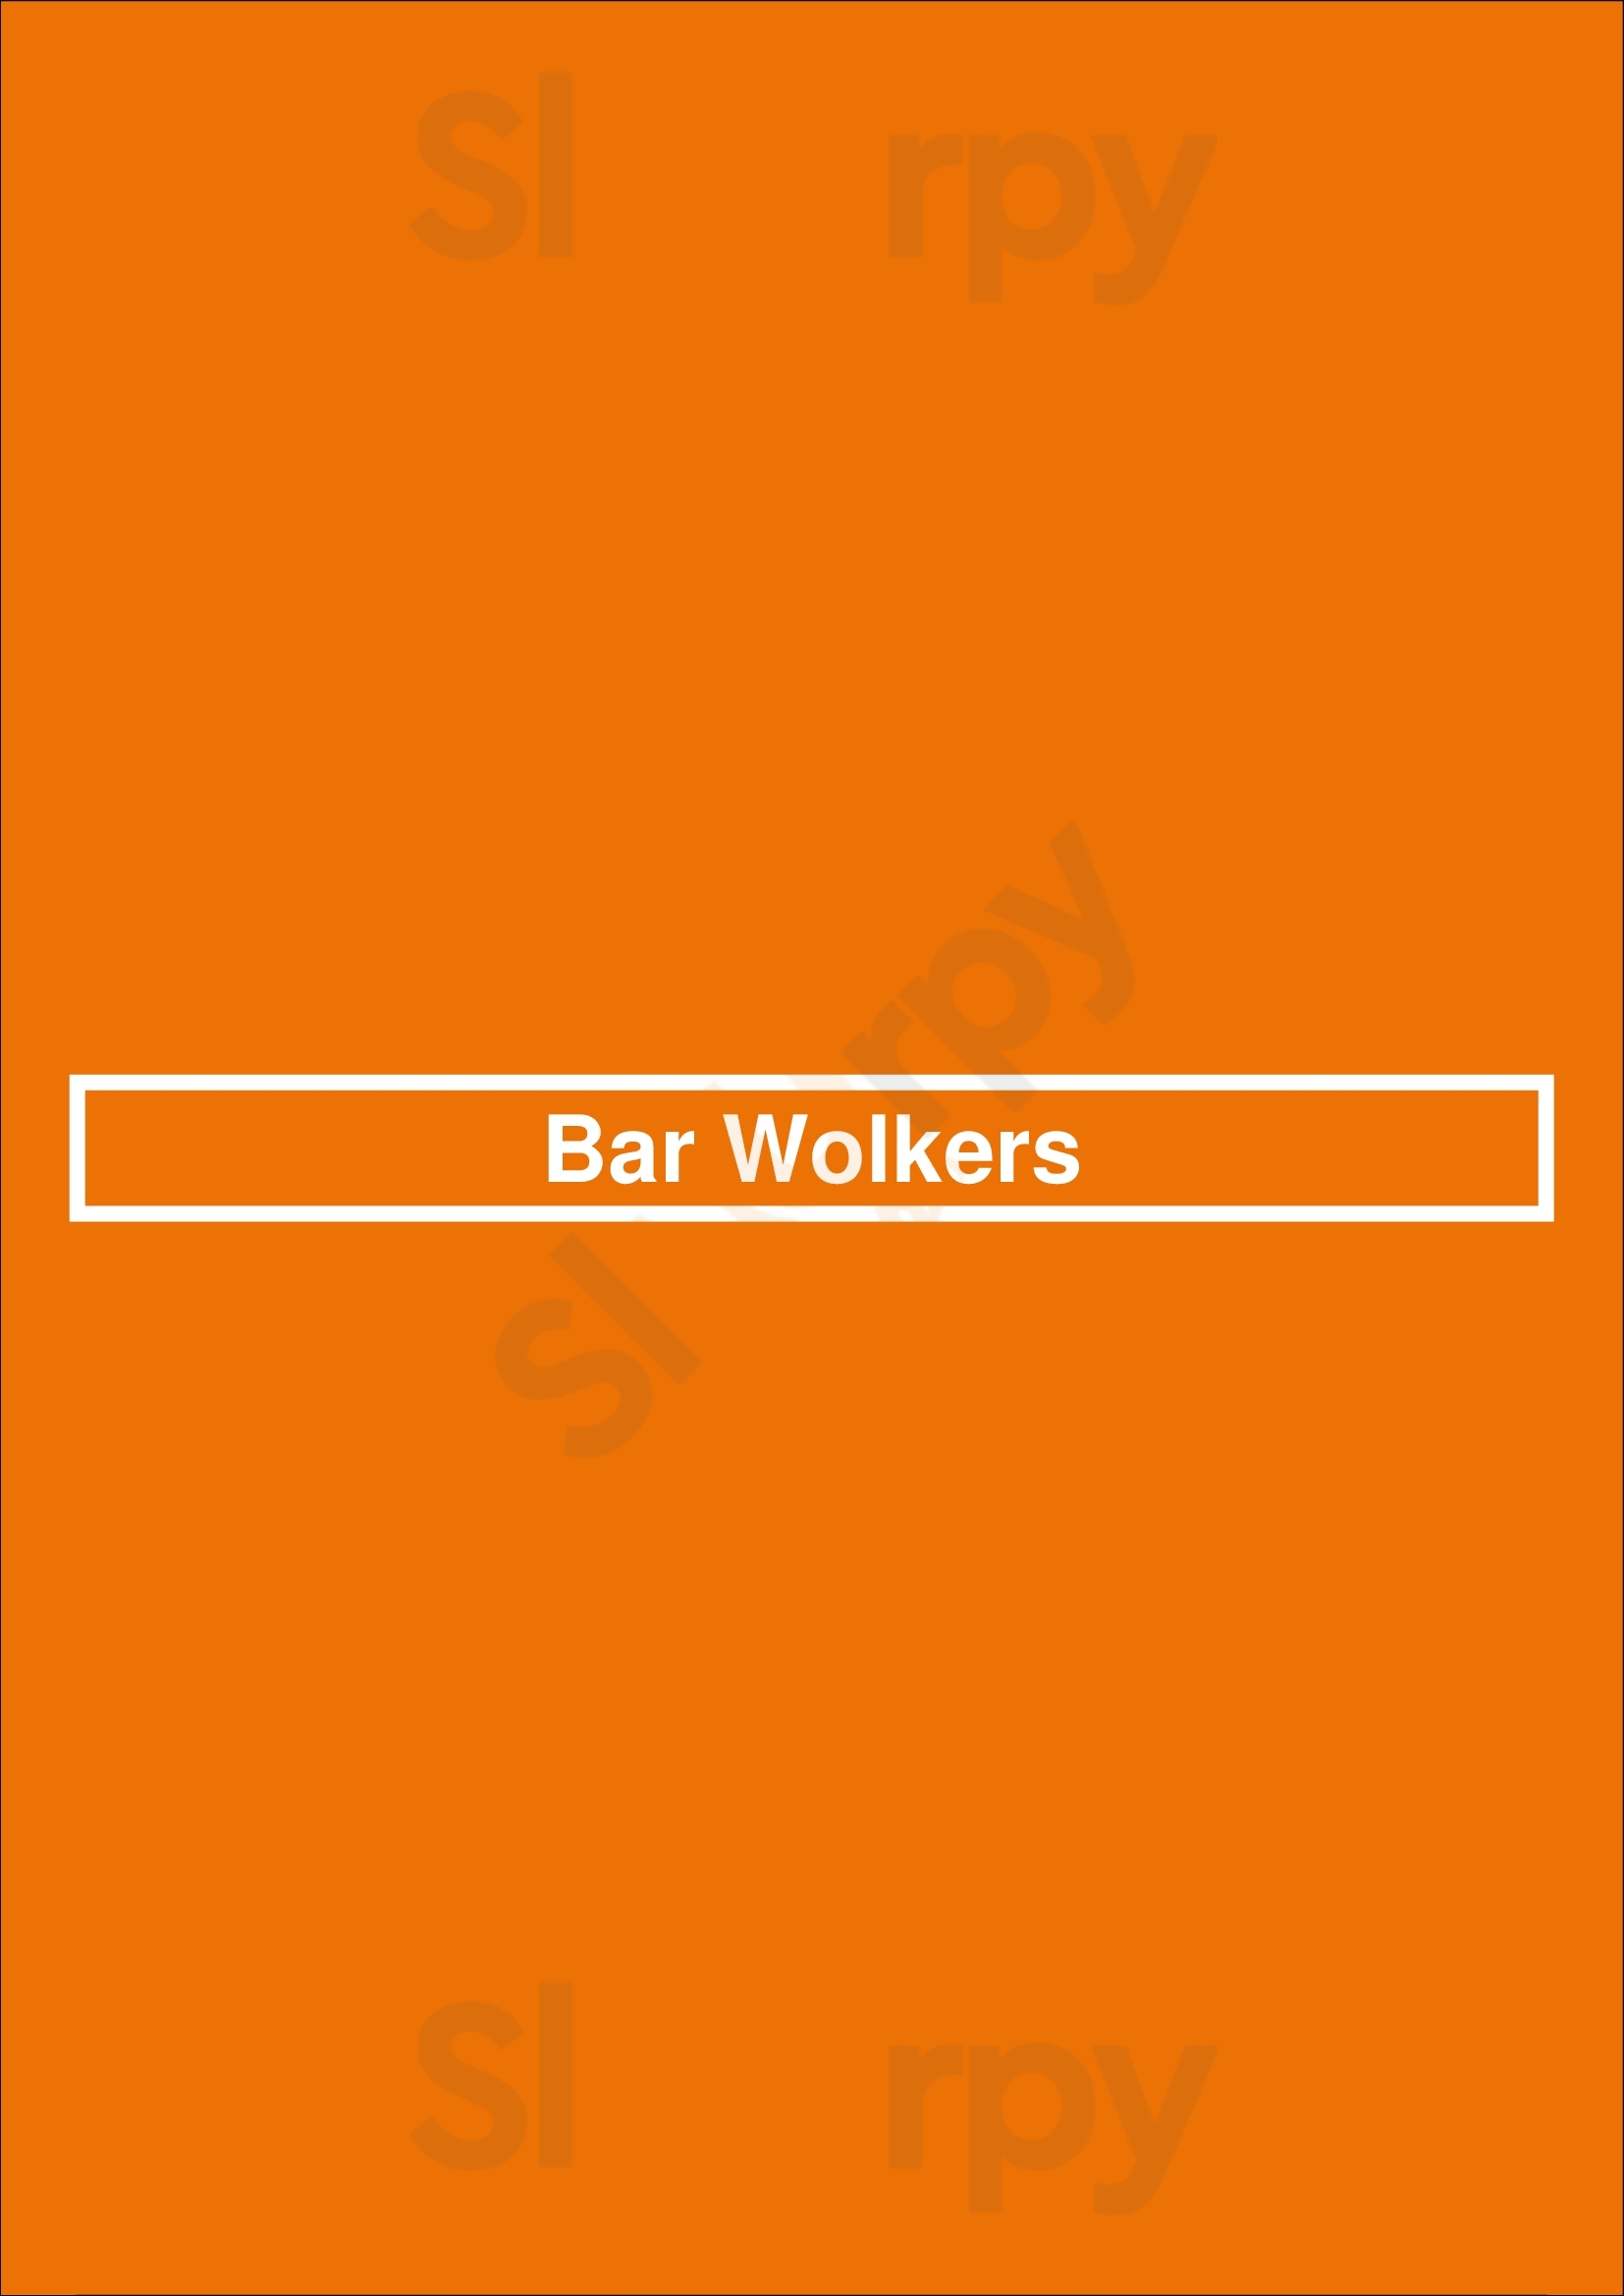 Bar Wolkers Haarlem Menu - 1